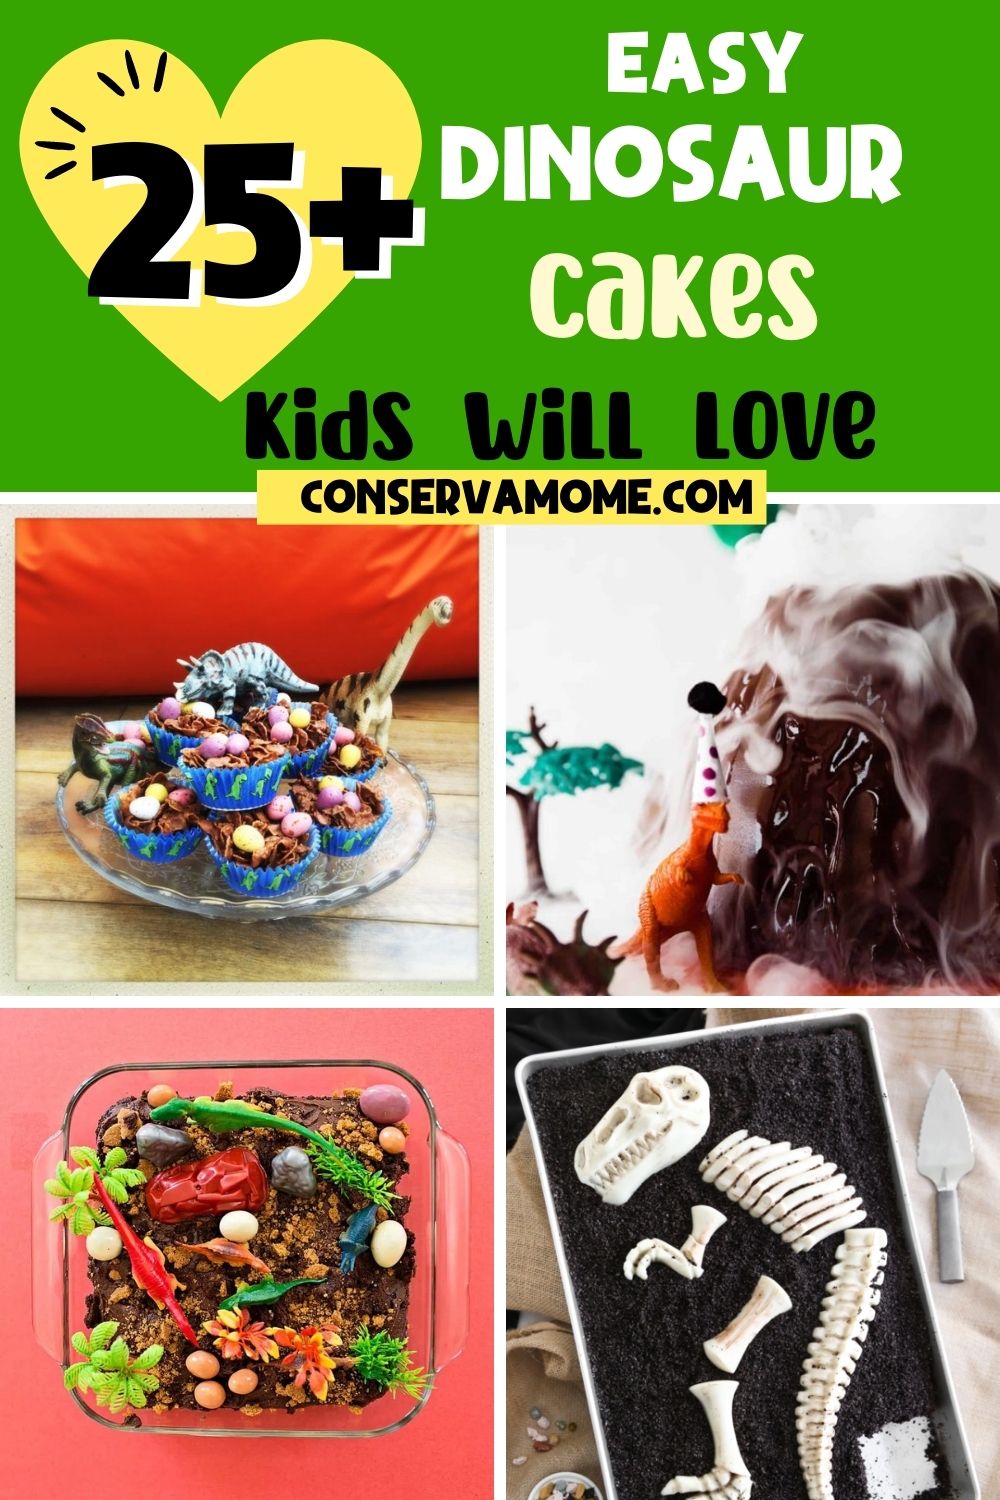 Easy Dinosaur Cakes kids will love